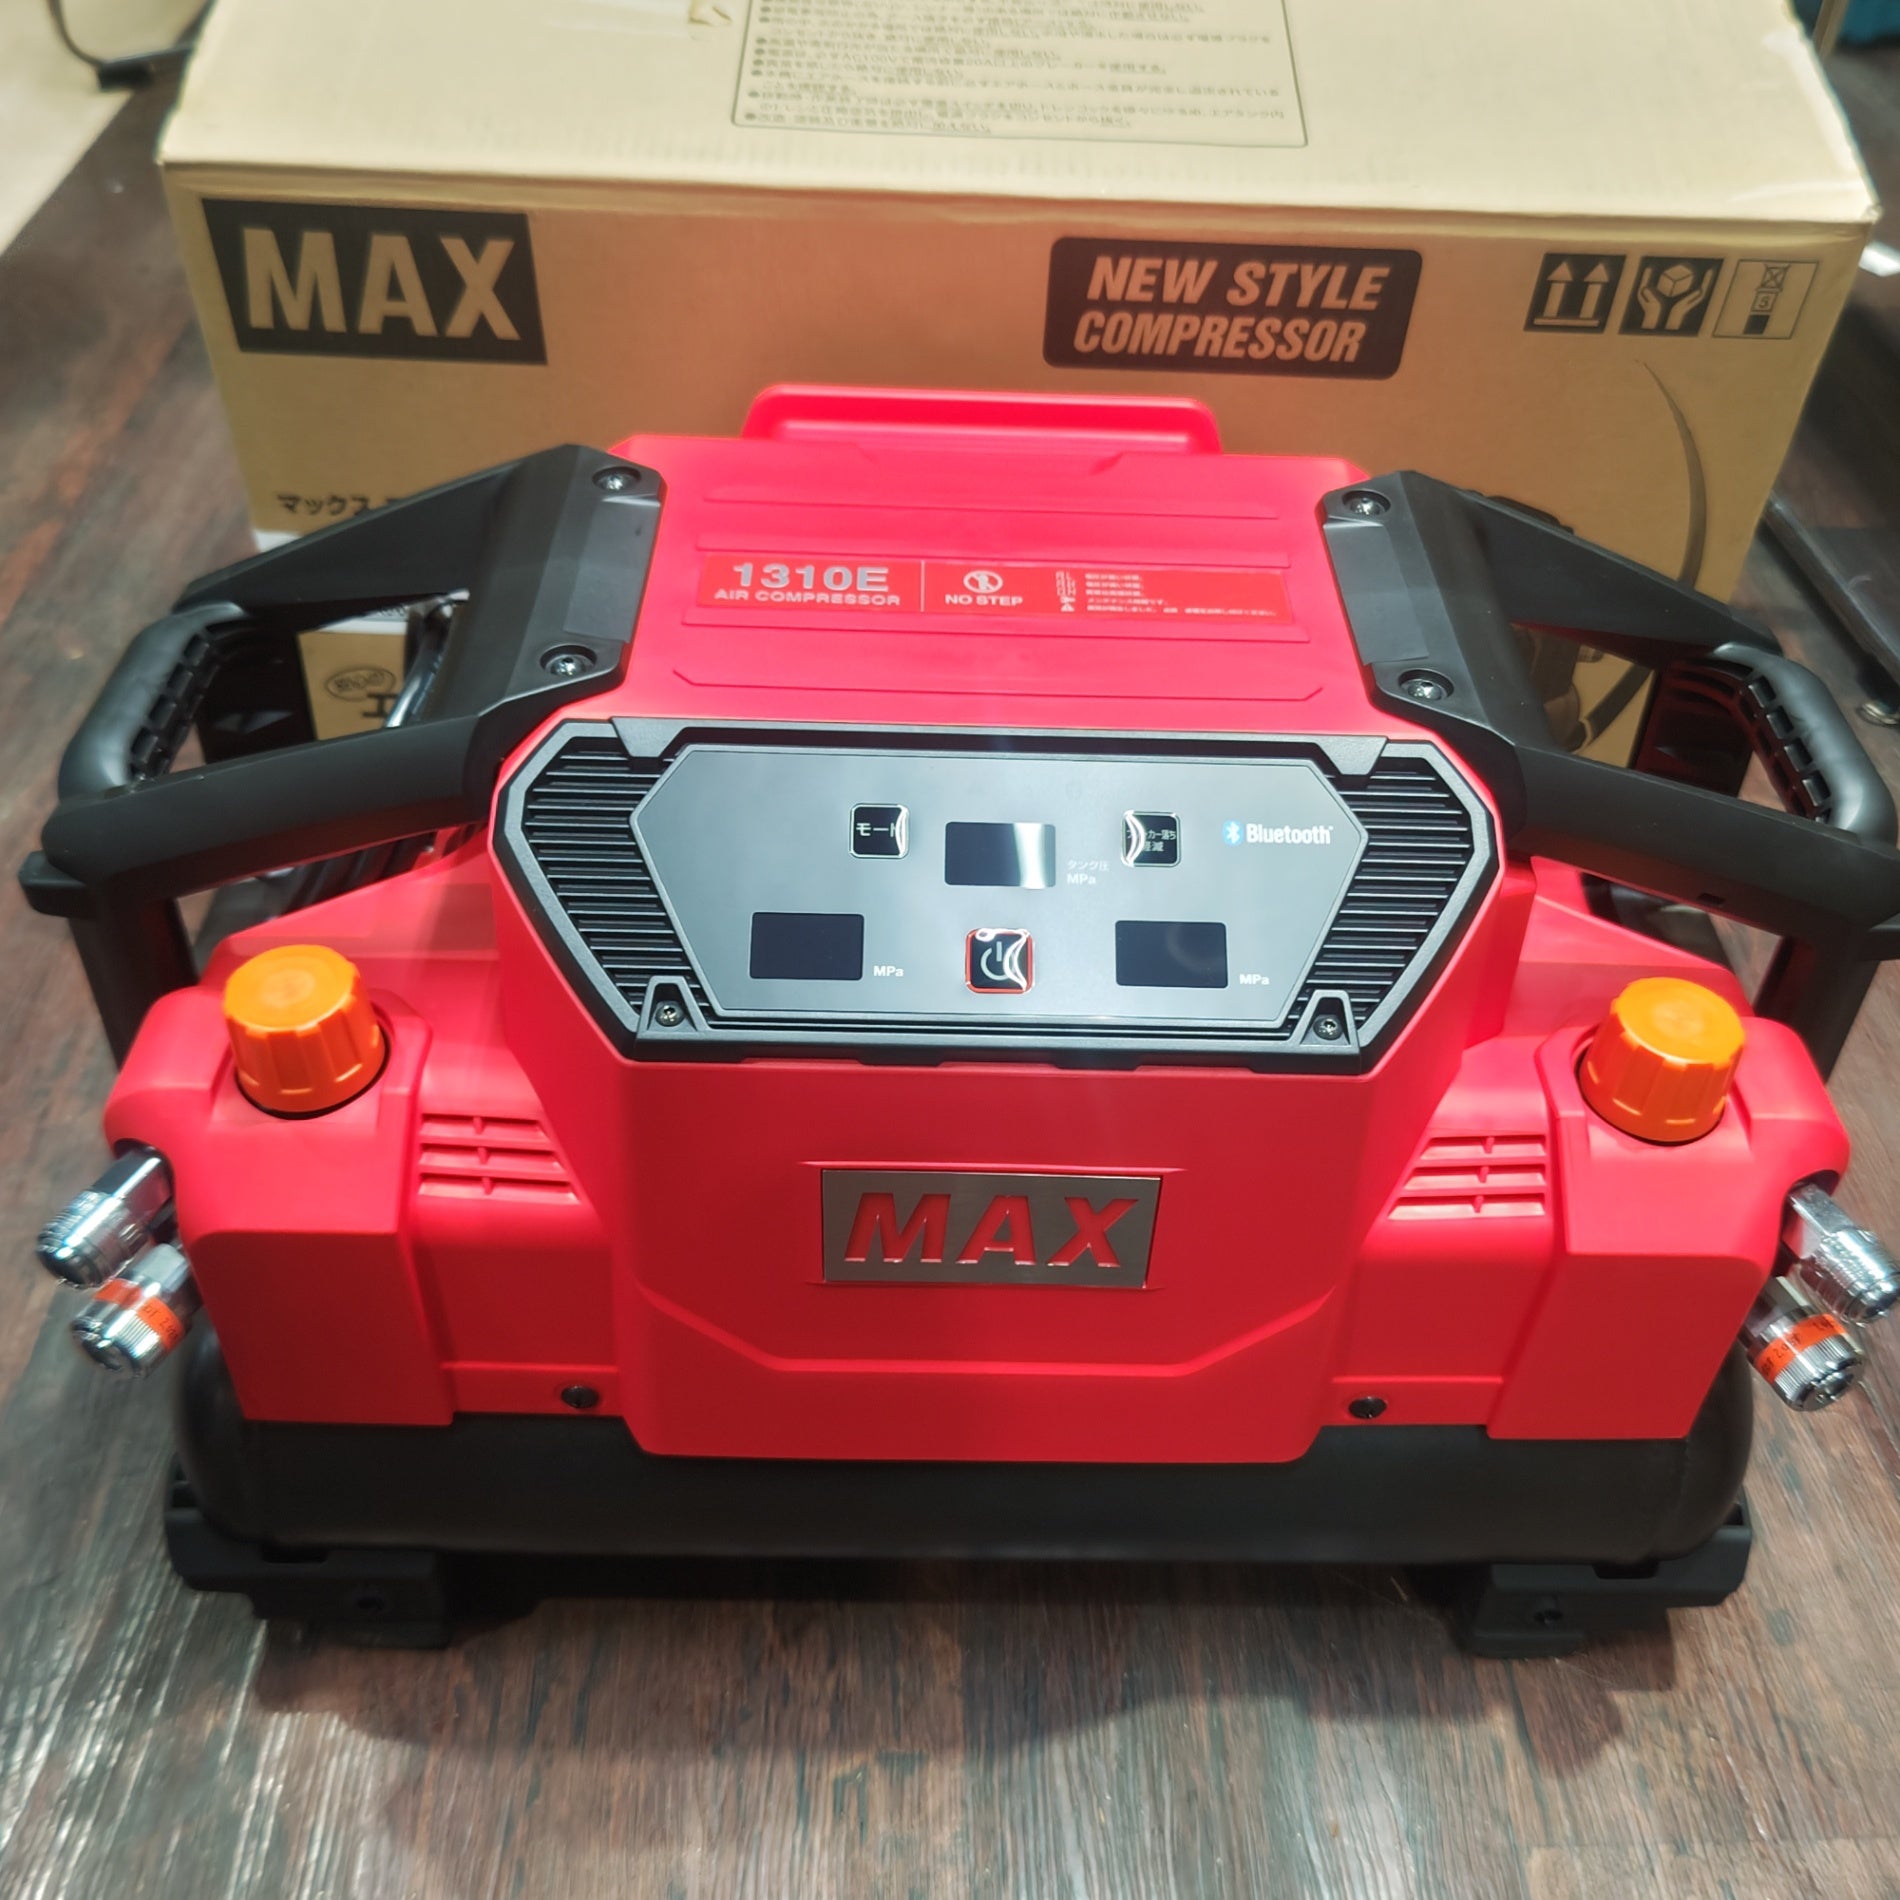 マックス/MAX エアコンプレッサー AK-HH1310E_レッド メーカー保証あり 